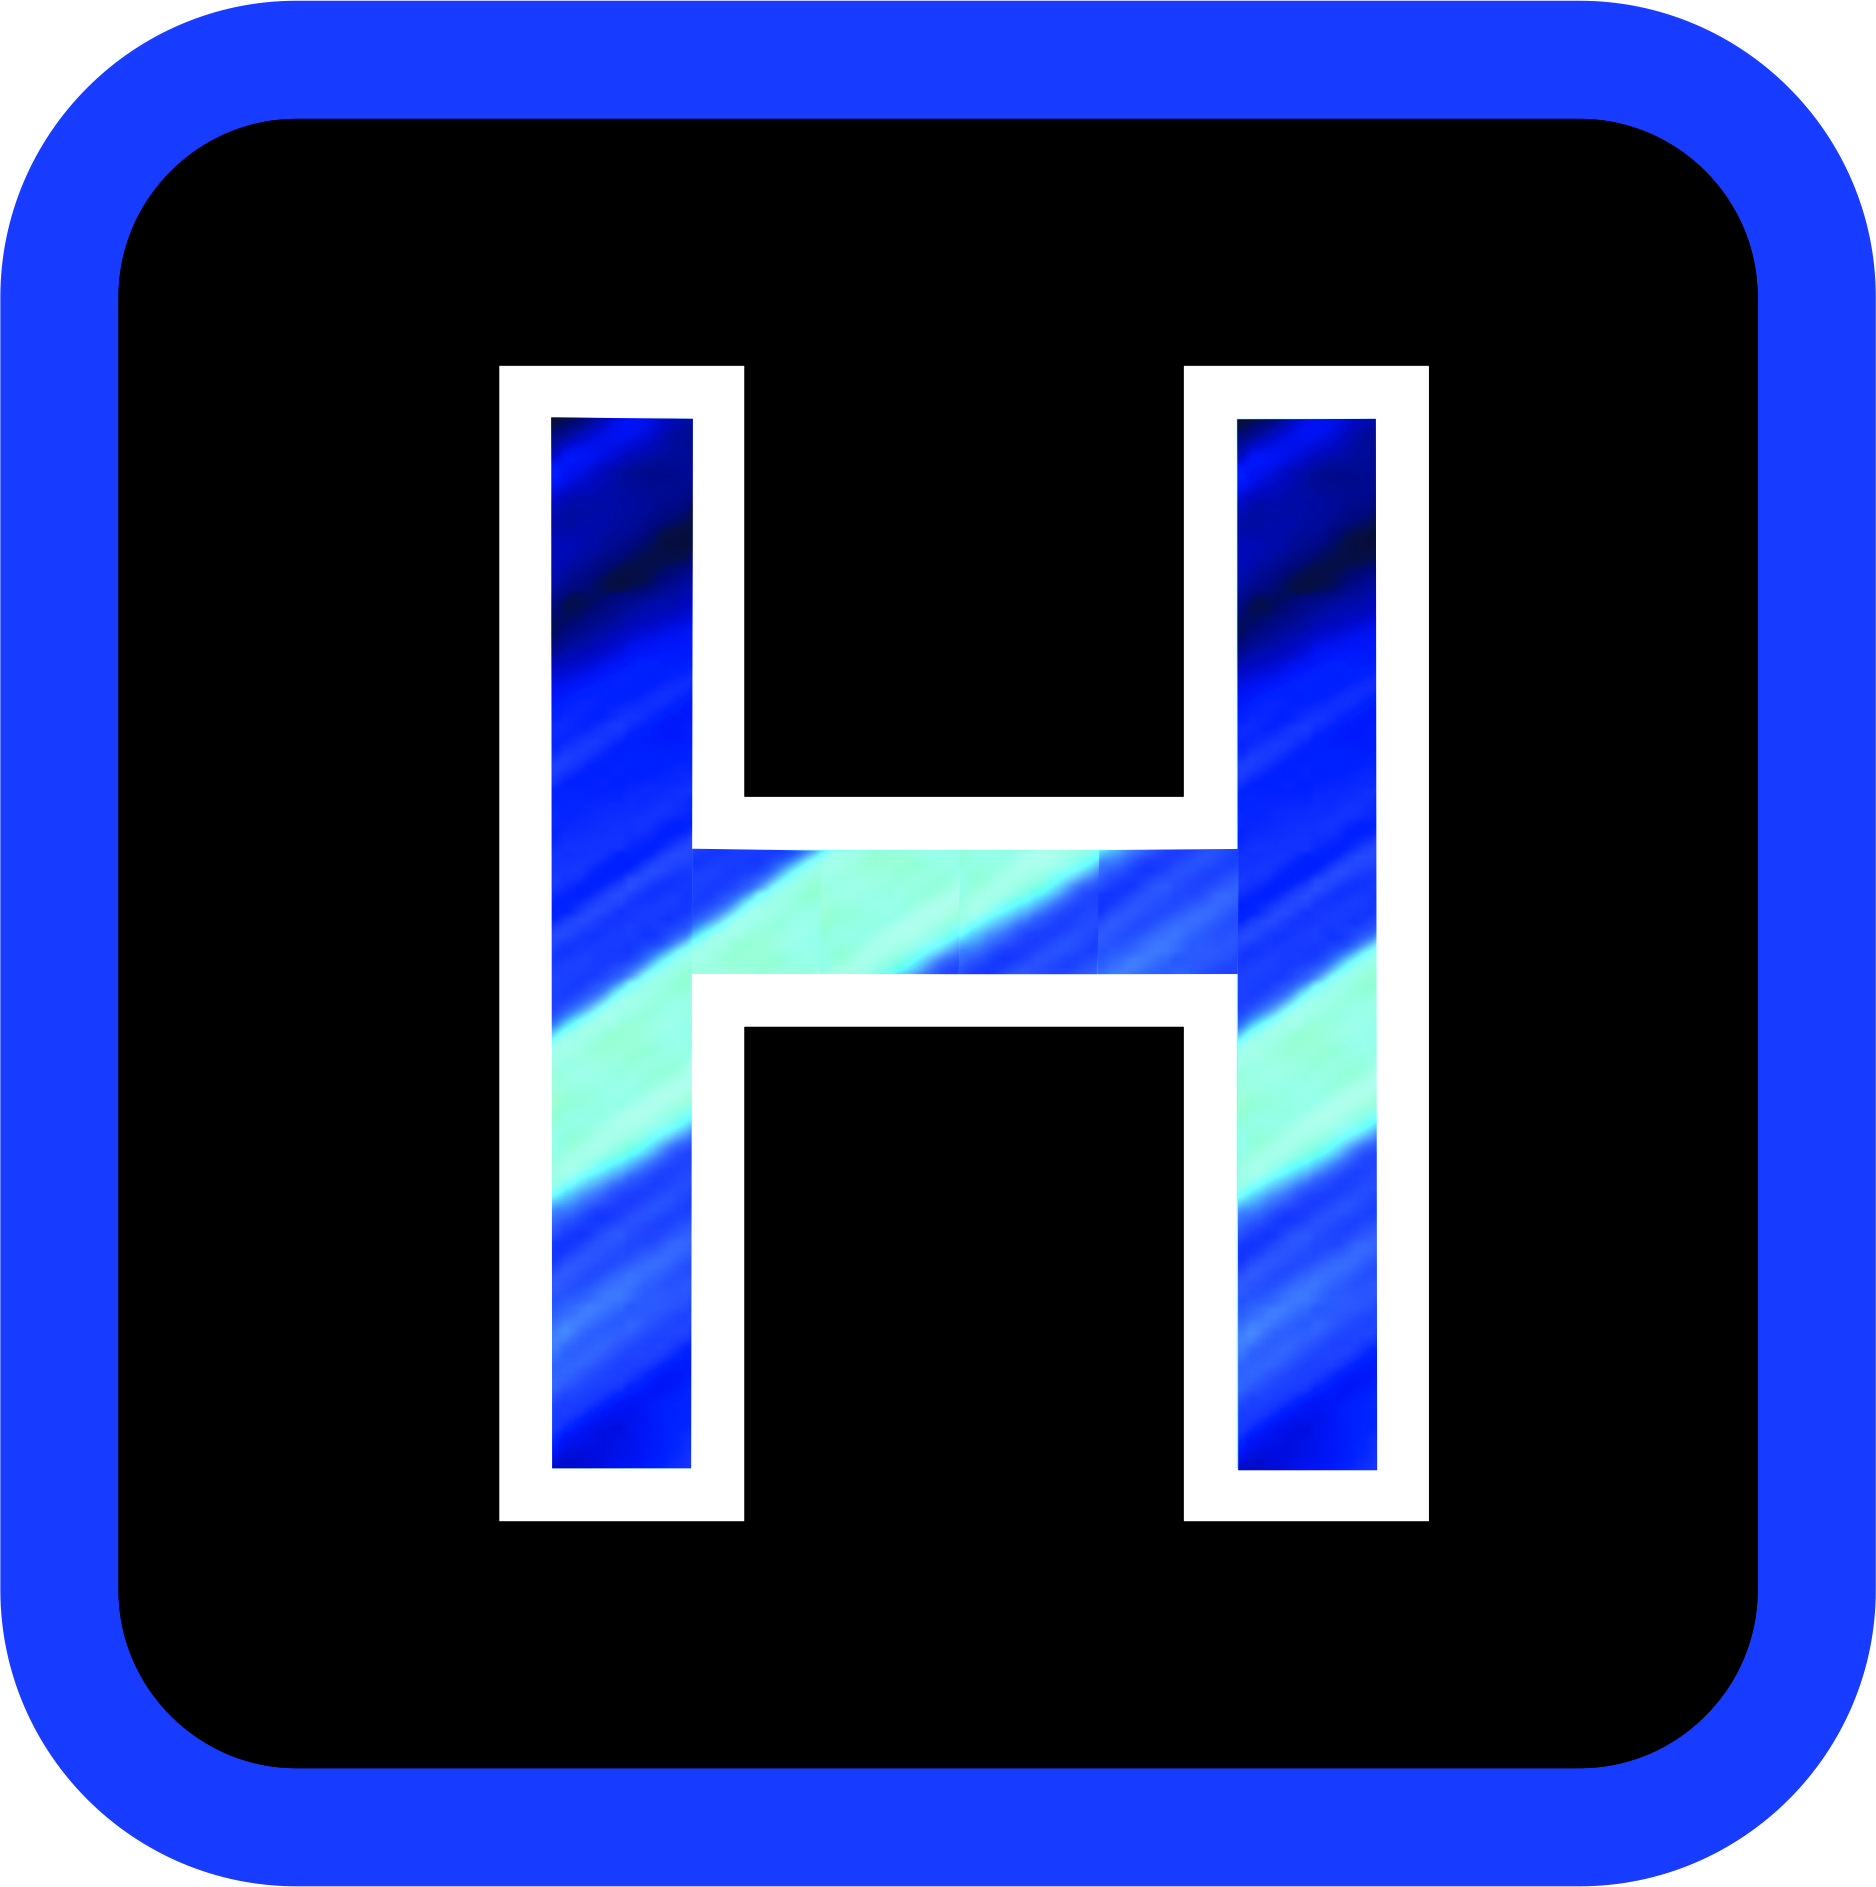 HMAX (HIROMI)